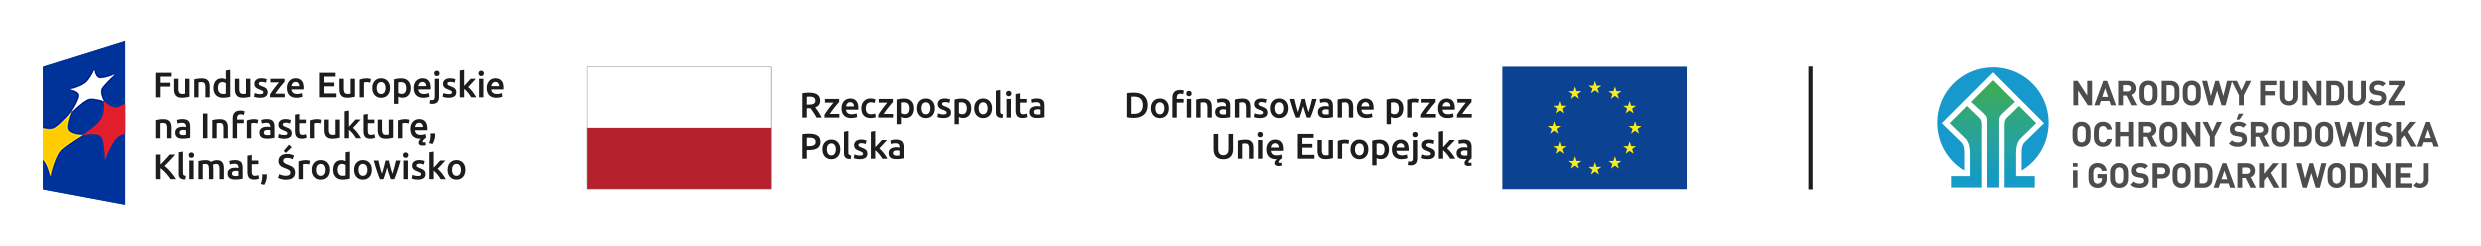 Ciąg znaków, od lewej: Fundusze Europejskie na Infrastrukturę, Klimat, Środowisko, Rzeczpospolita Polska, Dofinansowane przez Unię Europejską i Narodowy Fundusz Ochrony Środowiska i Gospodarki Wodnej